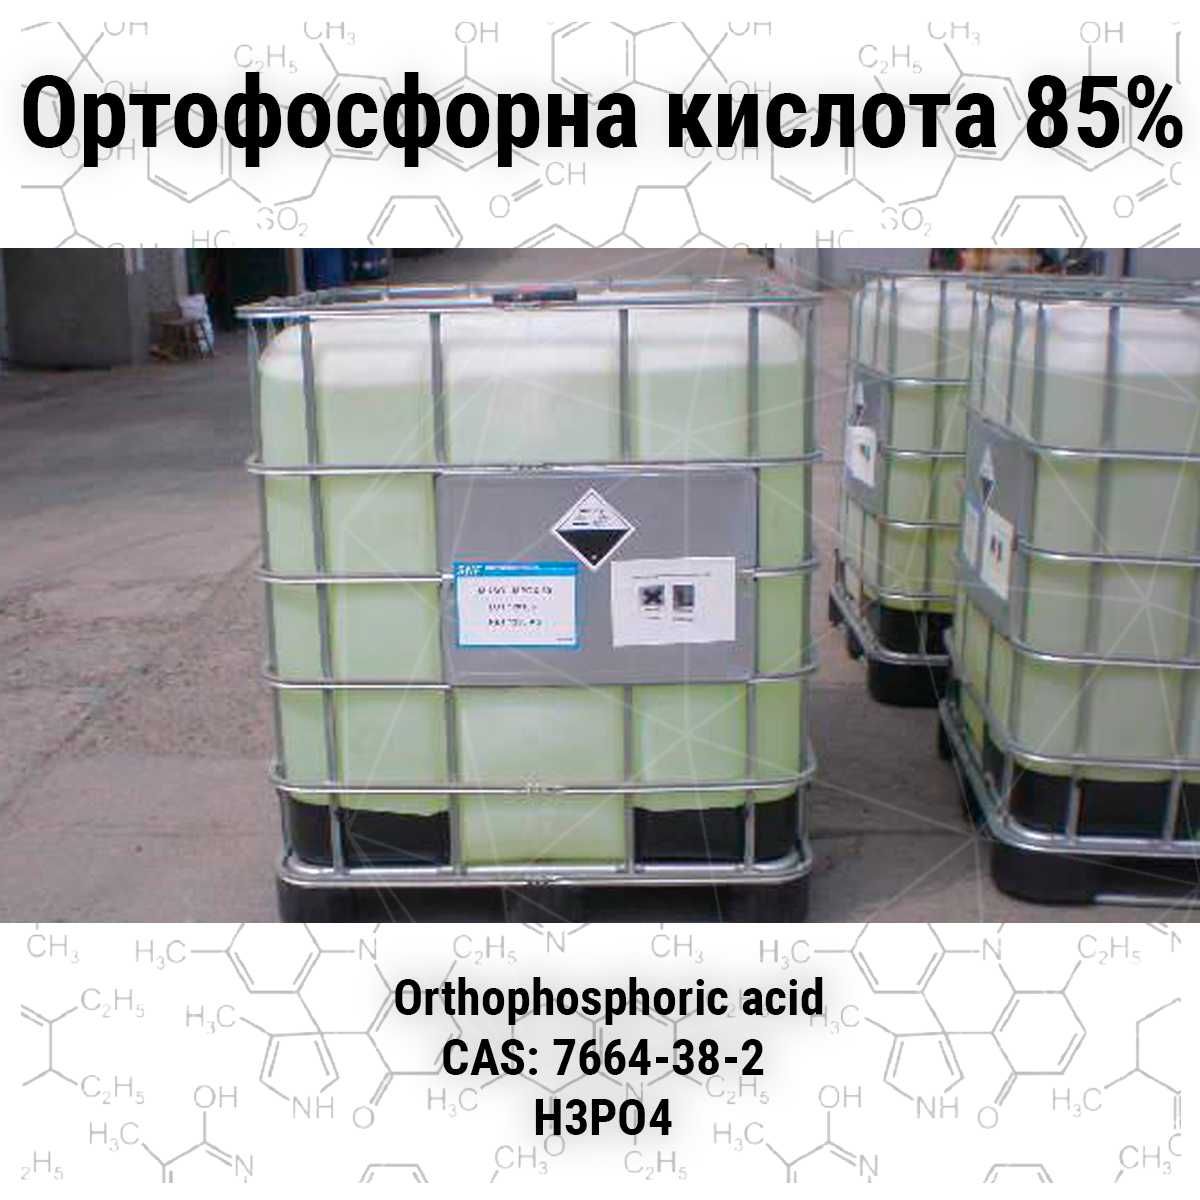 Ортофосфорна кислота 85% харчова (Е338) , роздріб (від 35кг) та опт